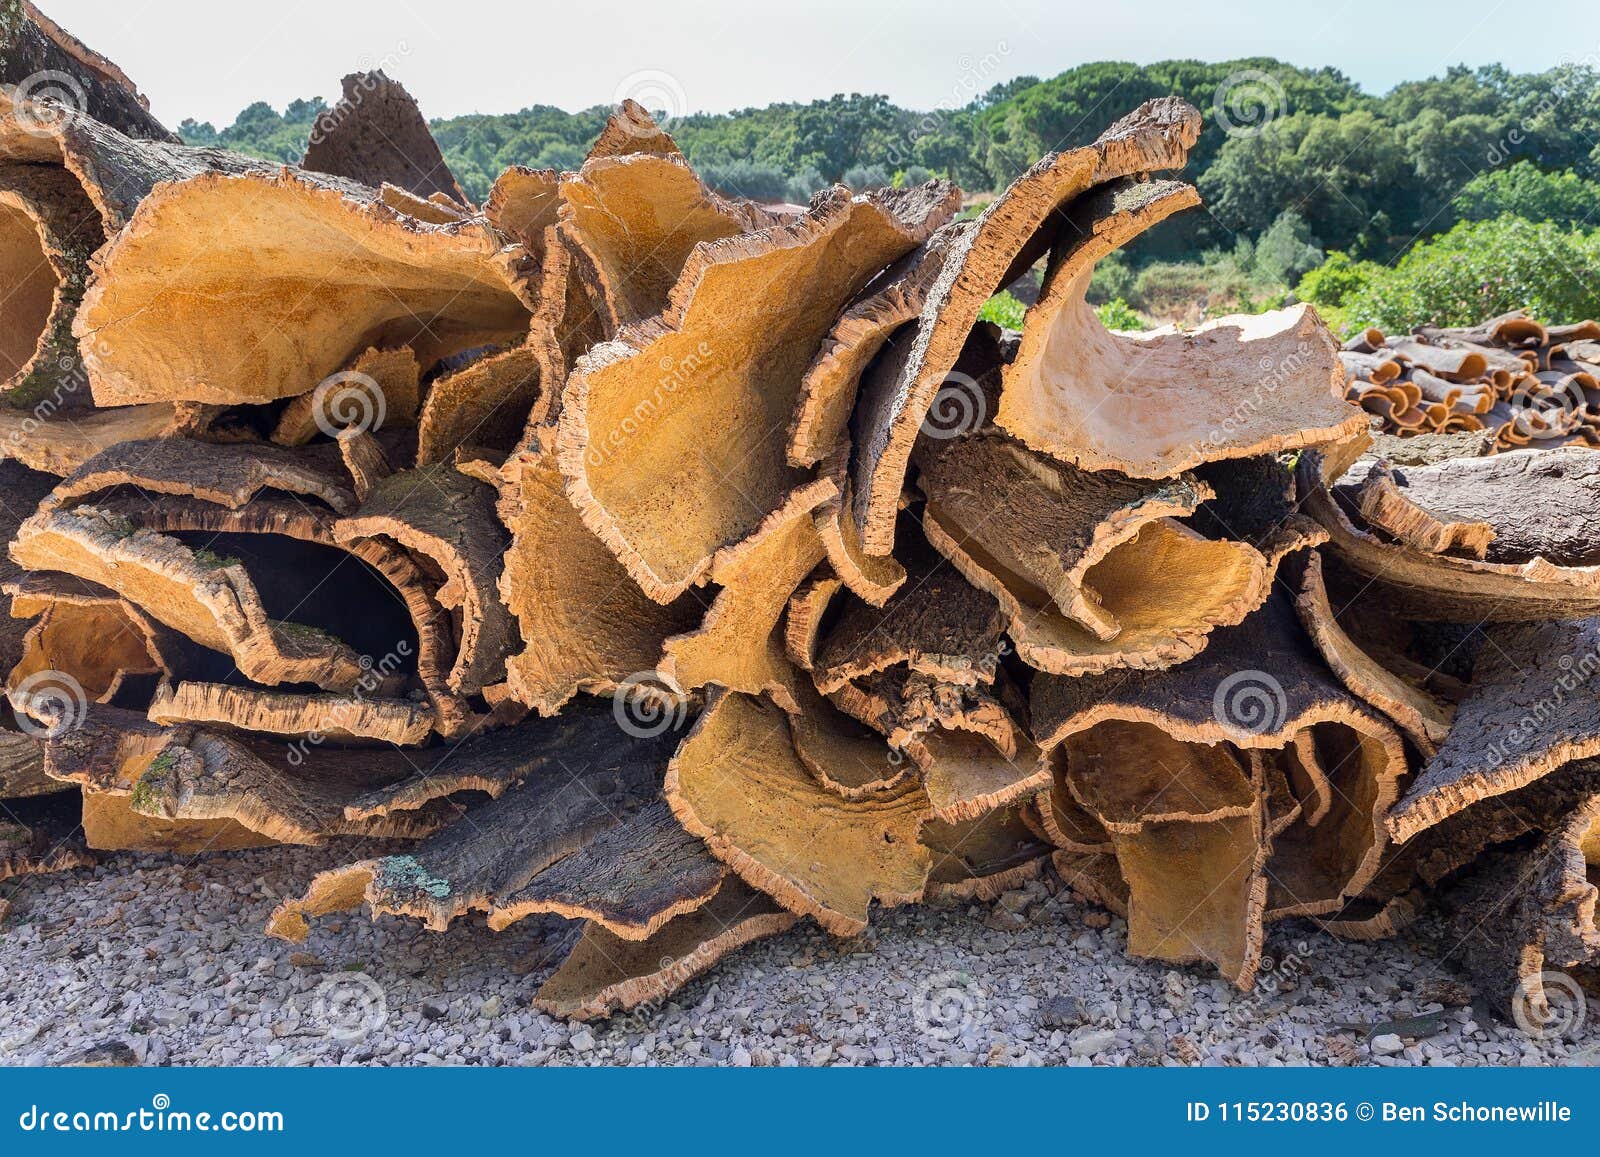 heap of cork tree bark as raw commodity